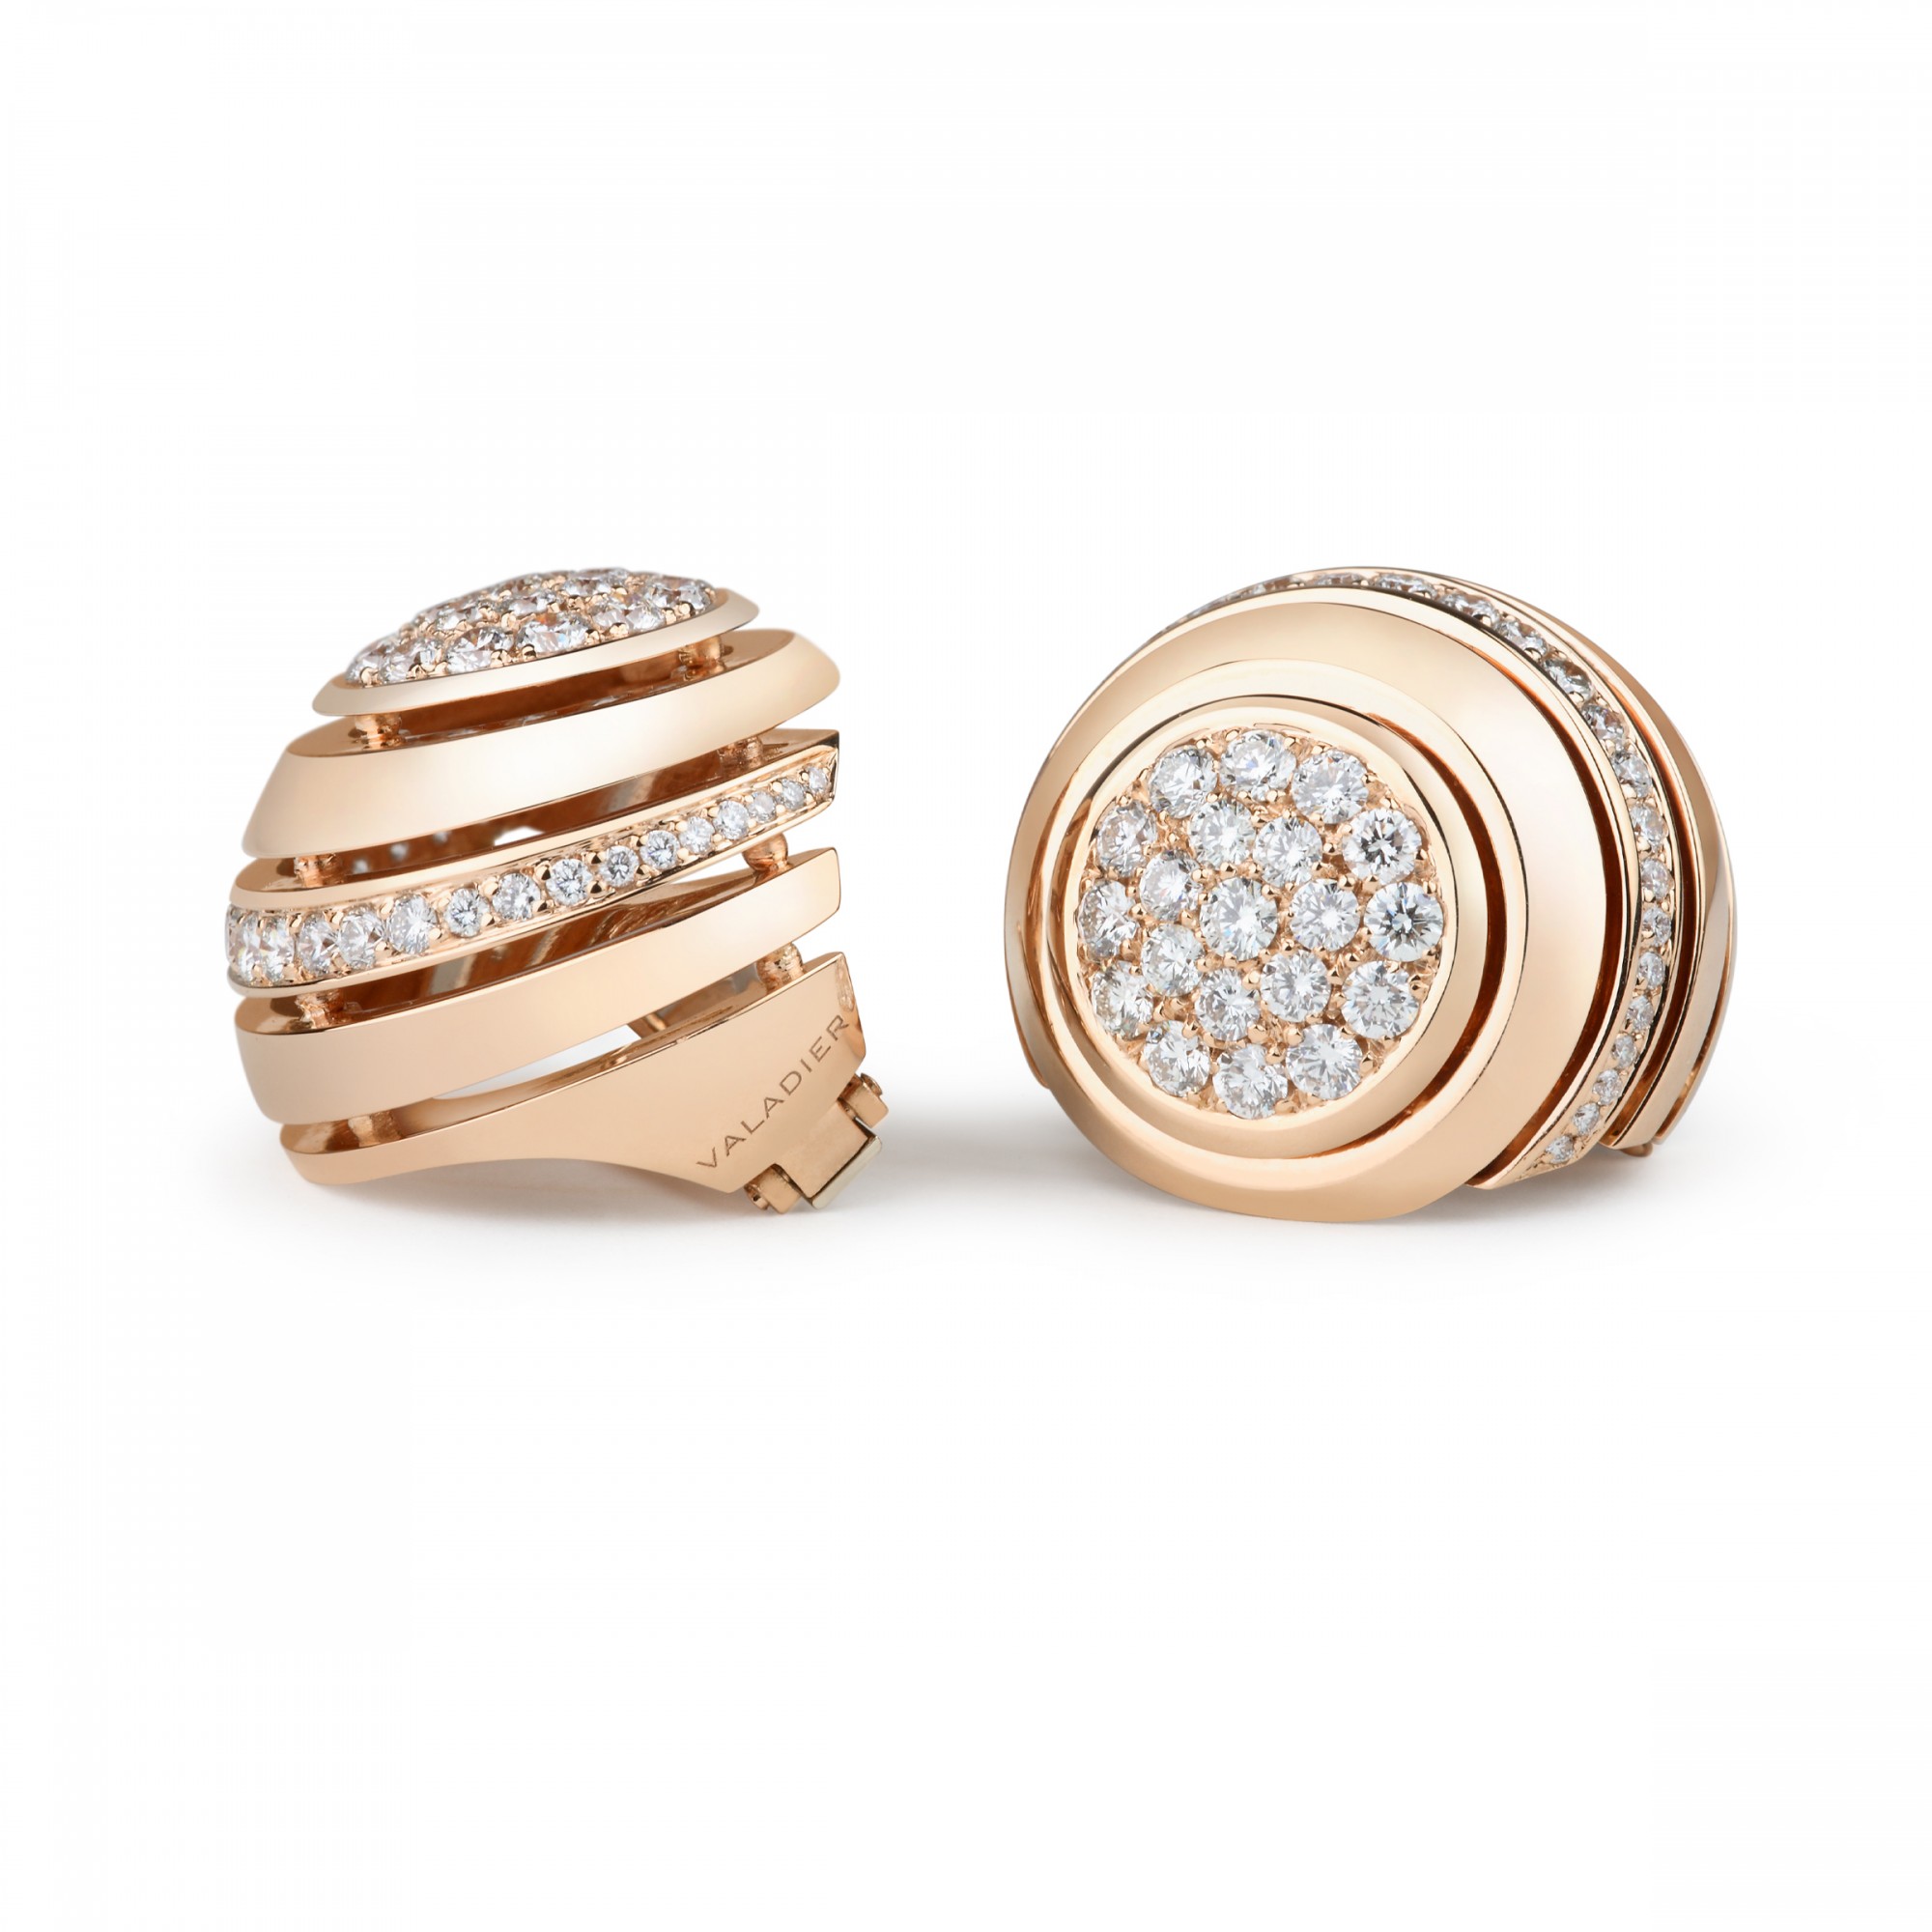 Orecchini in oro con diamanti  - Valadier shop online